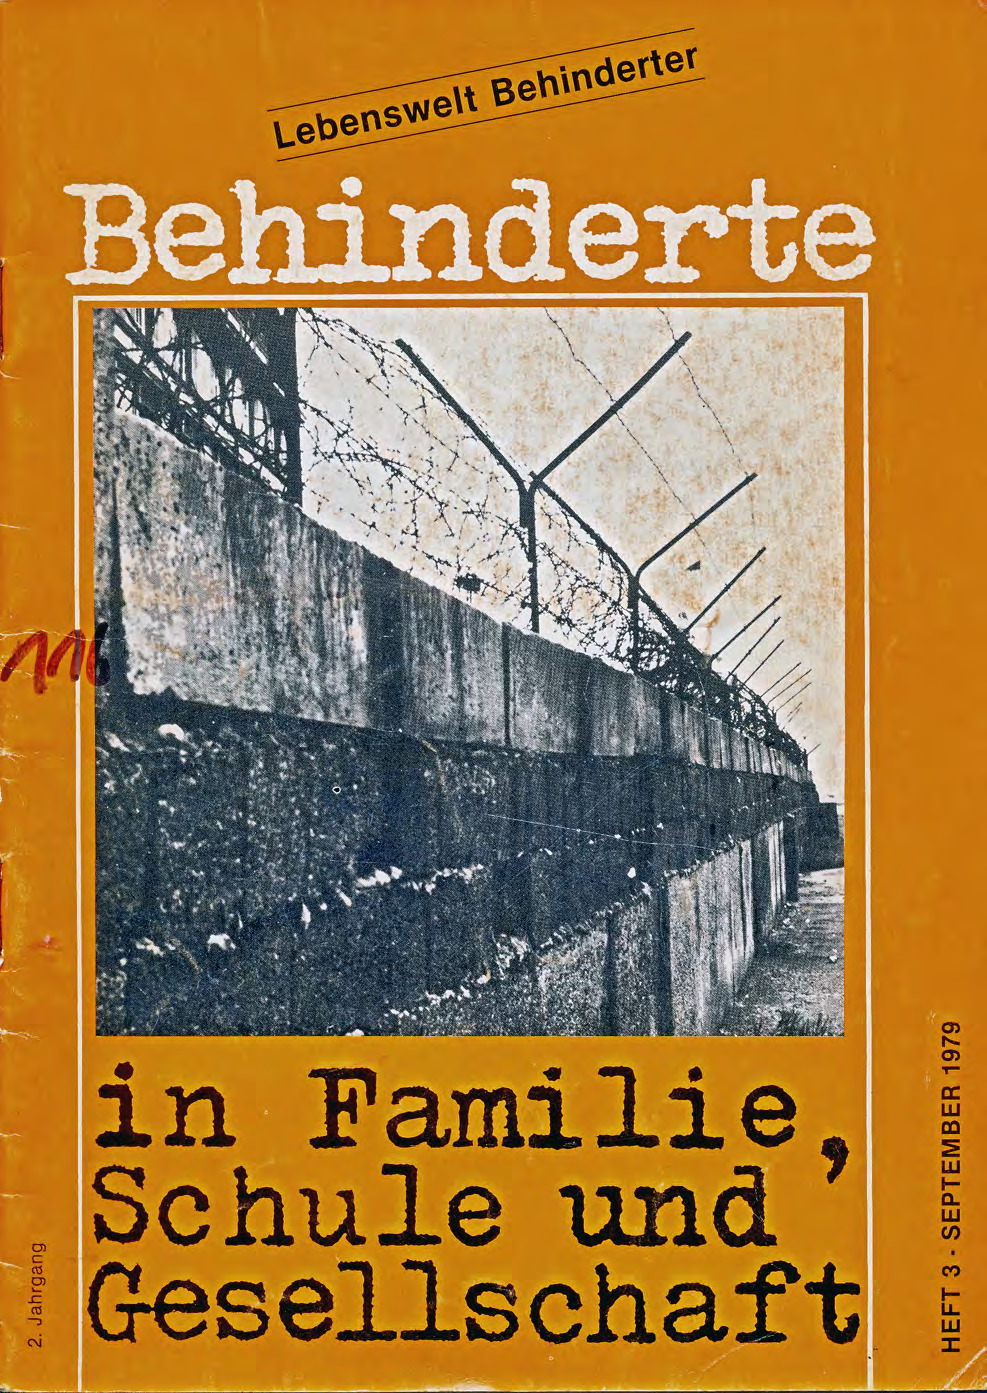 Titelbild der Zeitschrift BEHINDERTE MENSCHEN, Ausgabe 3/1979 "Lebenswelt Behinderter"